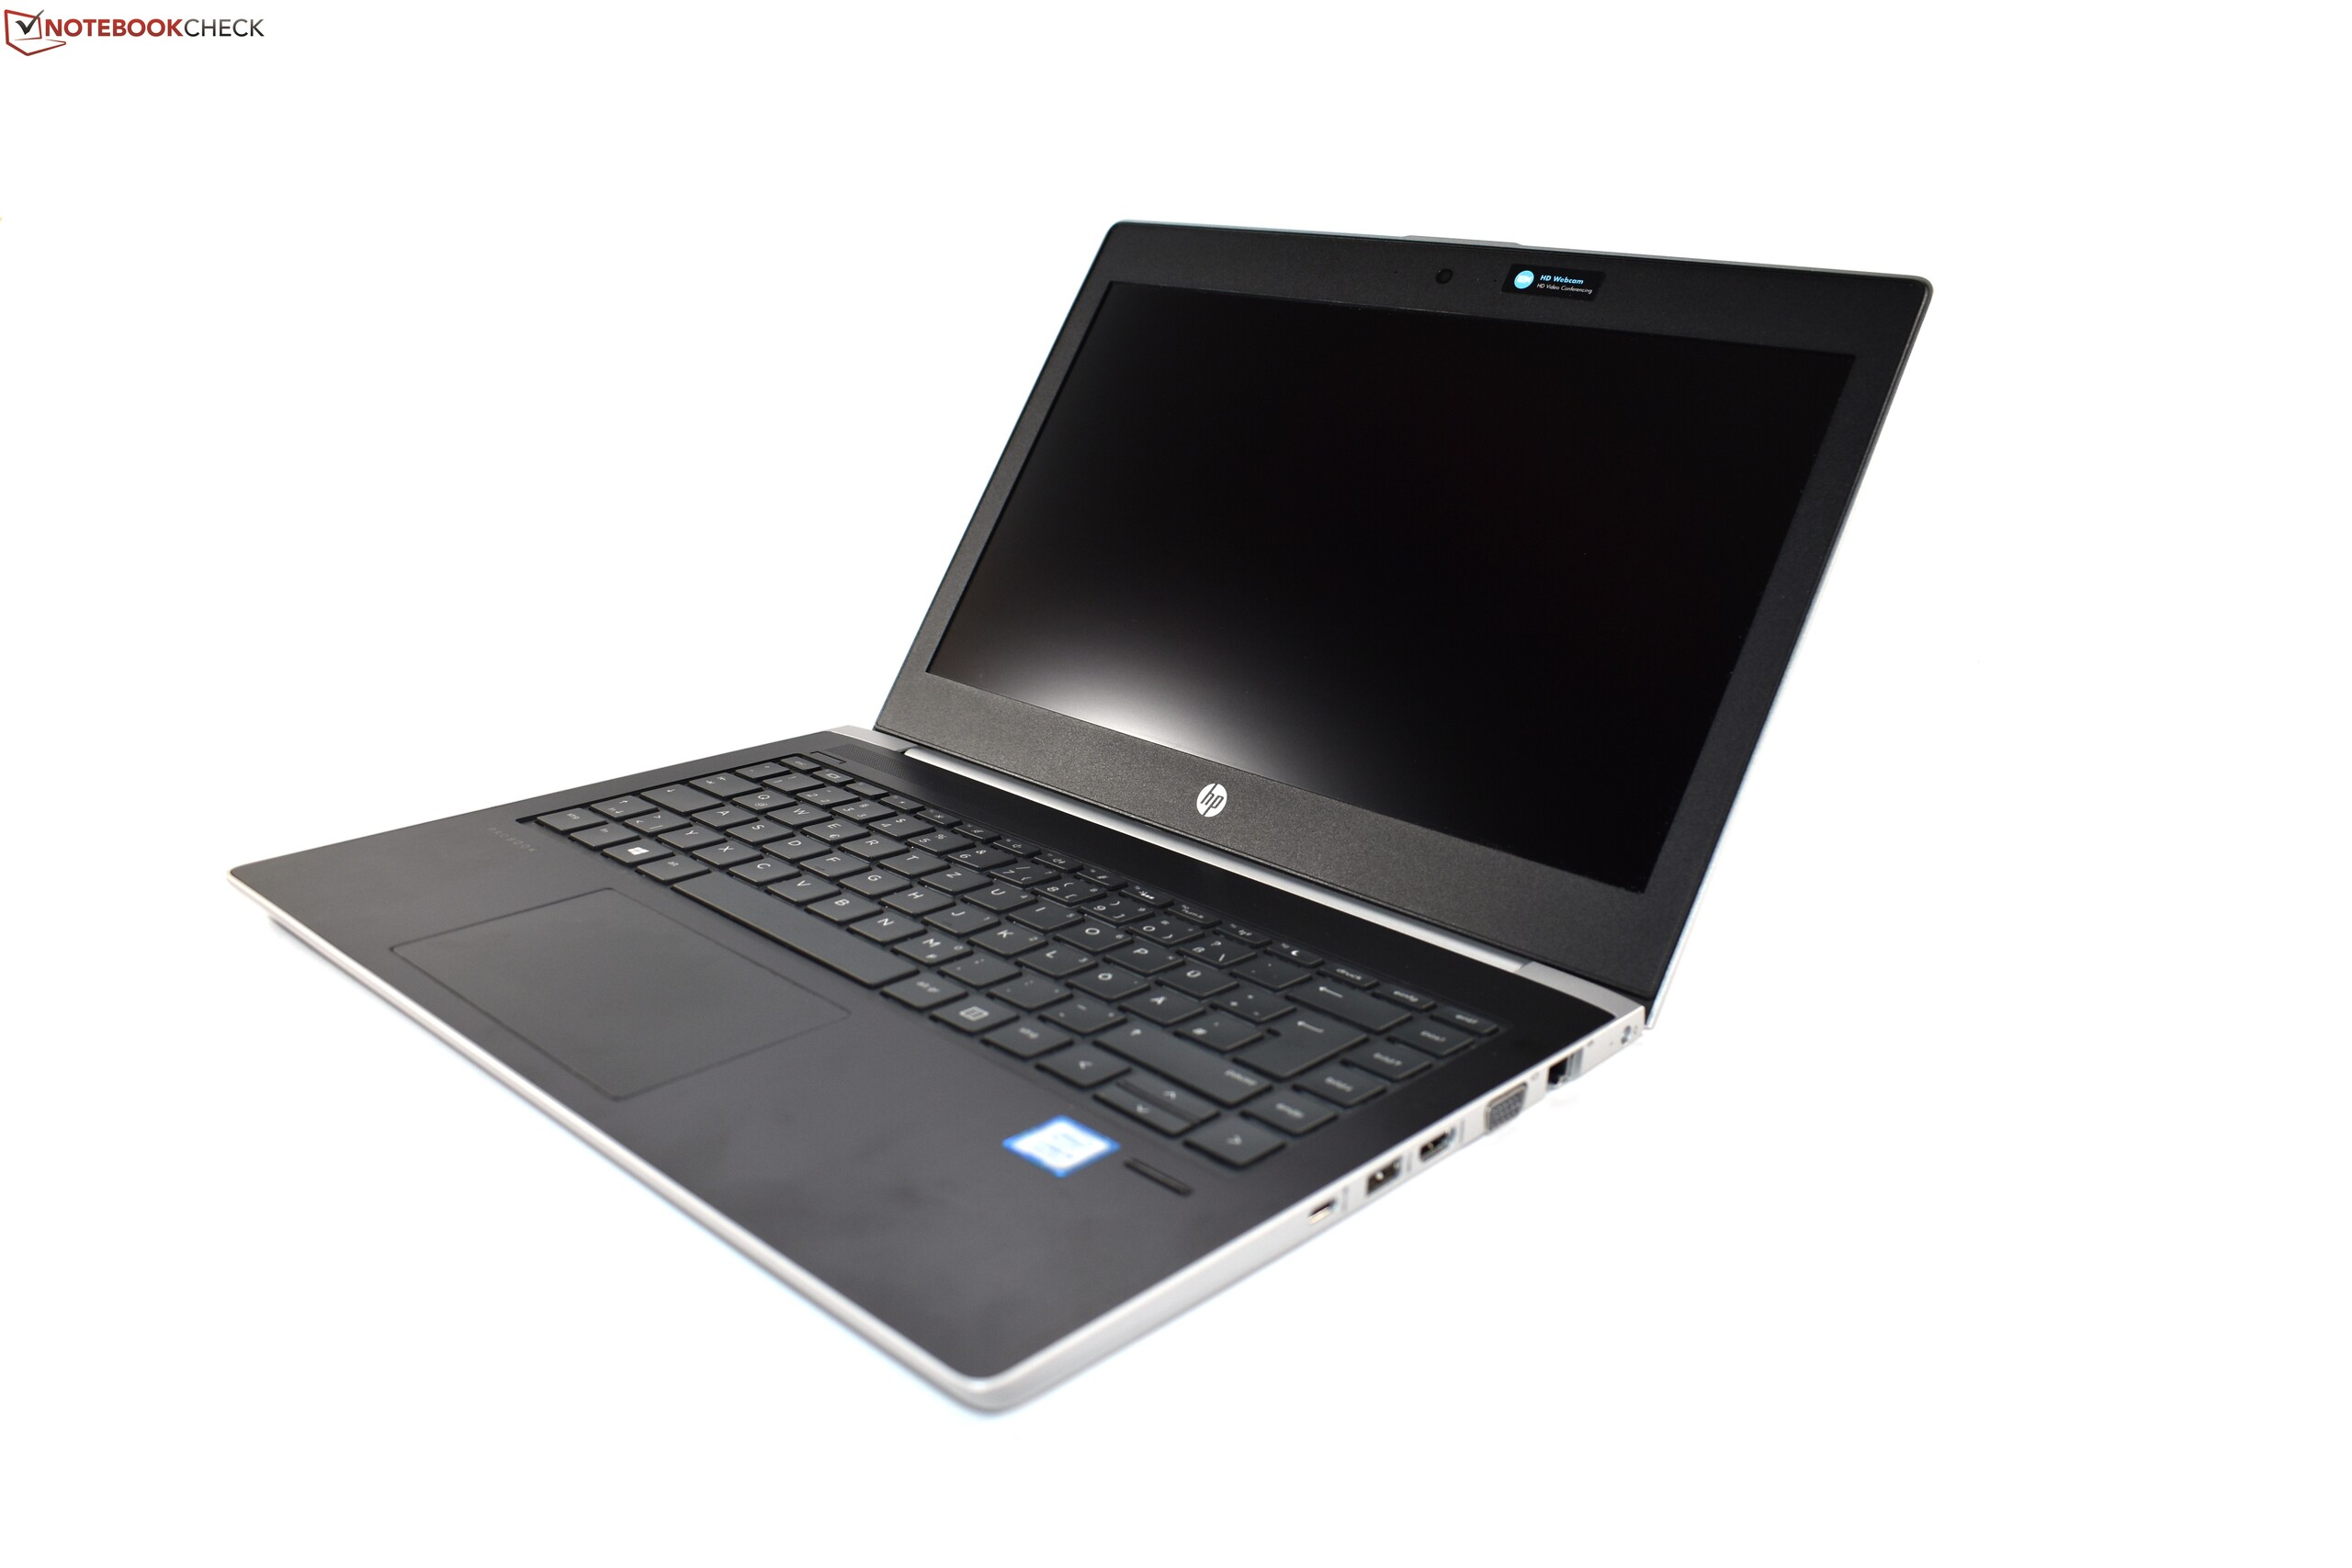 HP ProBook 430 G5 (i5-8250U, FHD) Laptop Review - NotebookCheck 